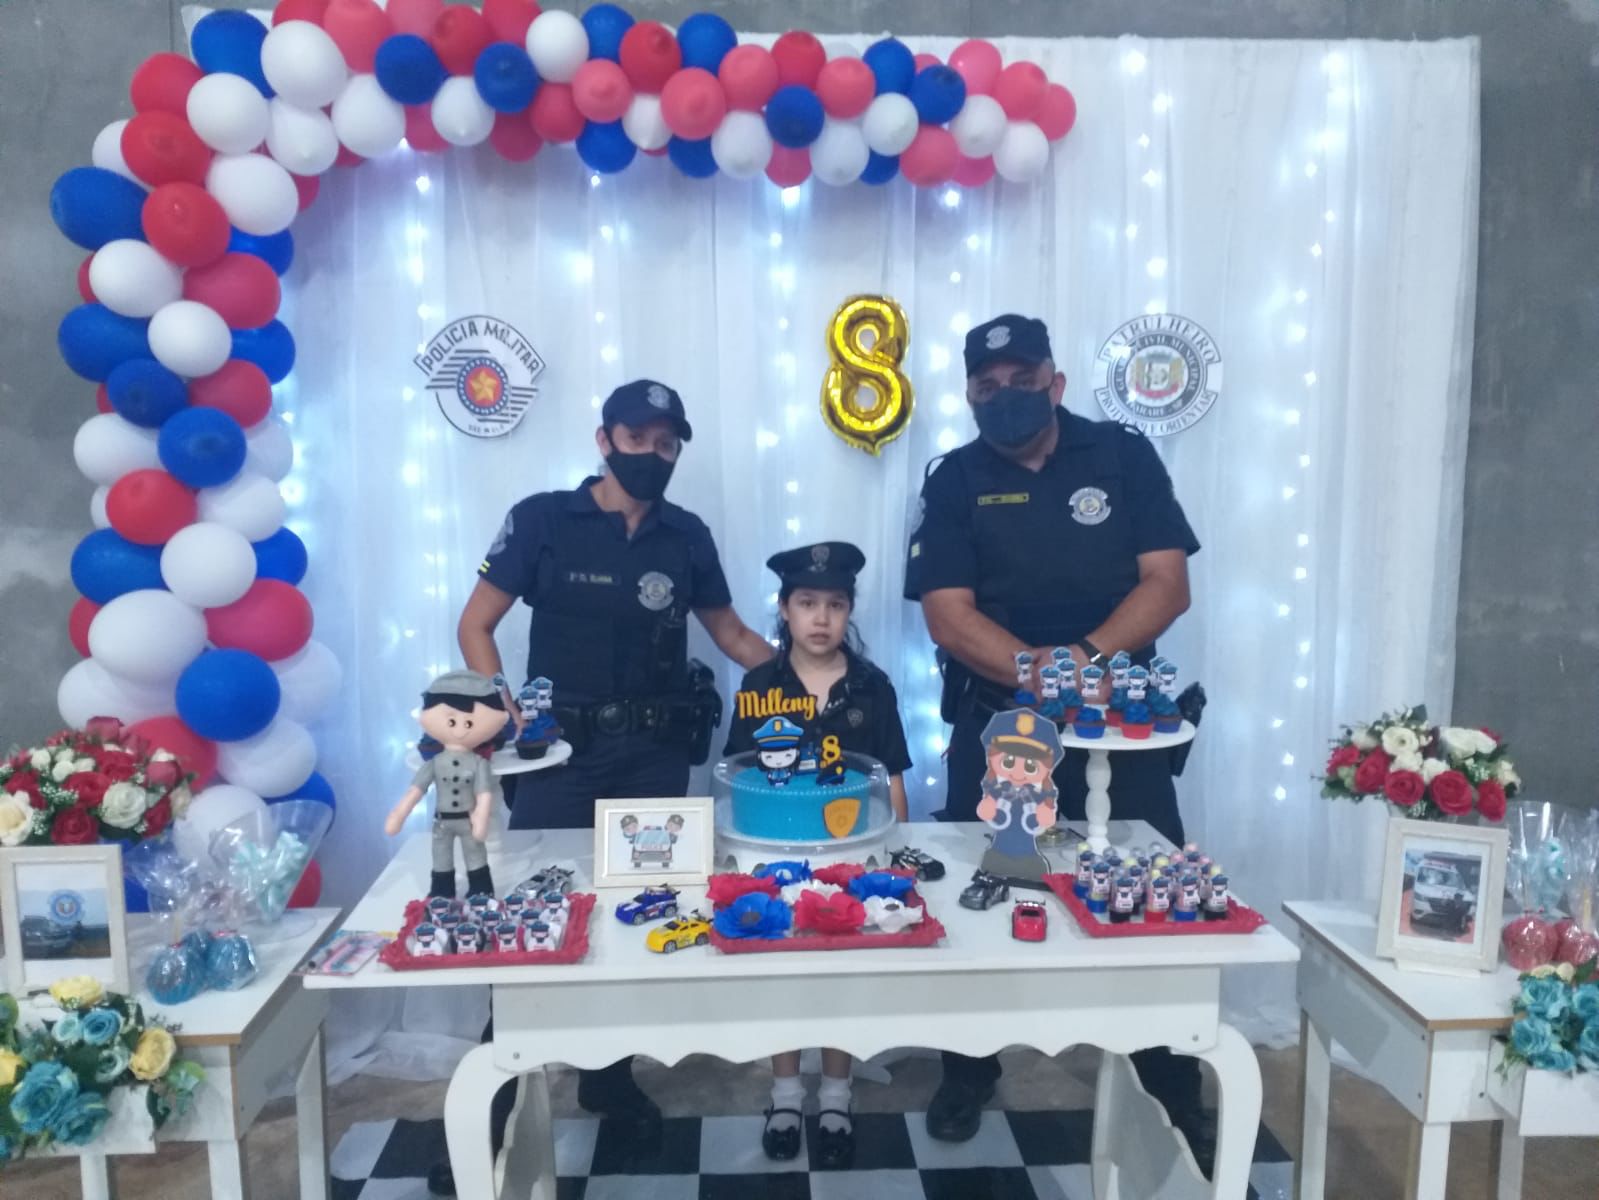 GCM de Itararé (SP) faz surpresa em festa de aniversário da pequena Milleny